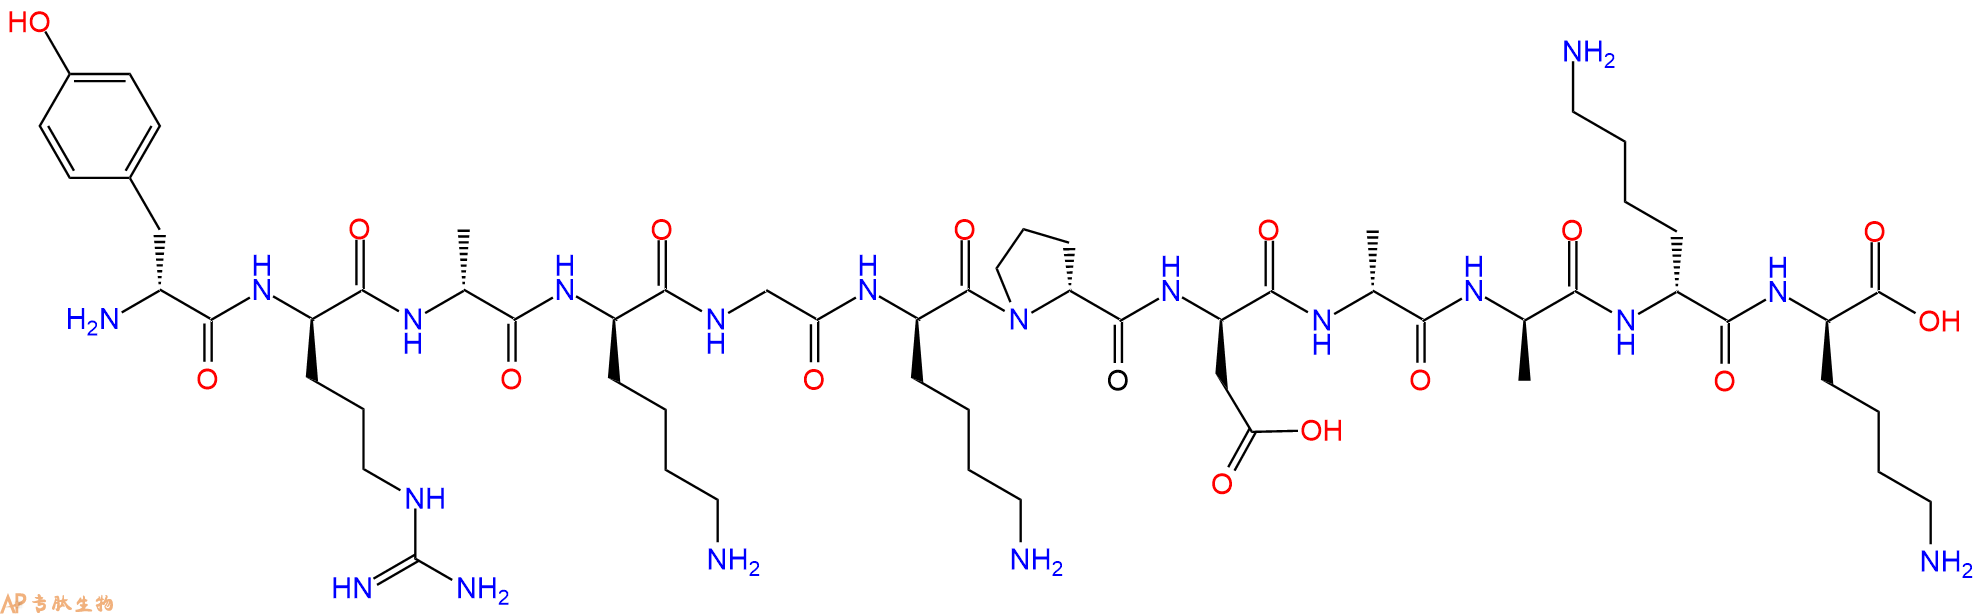 专肽生物产品H2N-DTyr-DArg-DAla-DLys-Gly-DLys-DPro-DAsp-DAla-DA